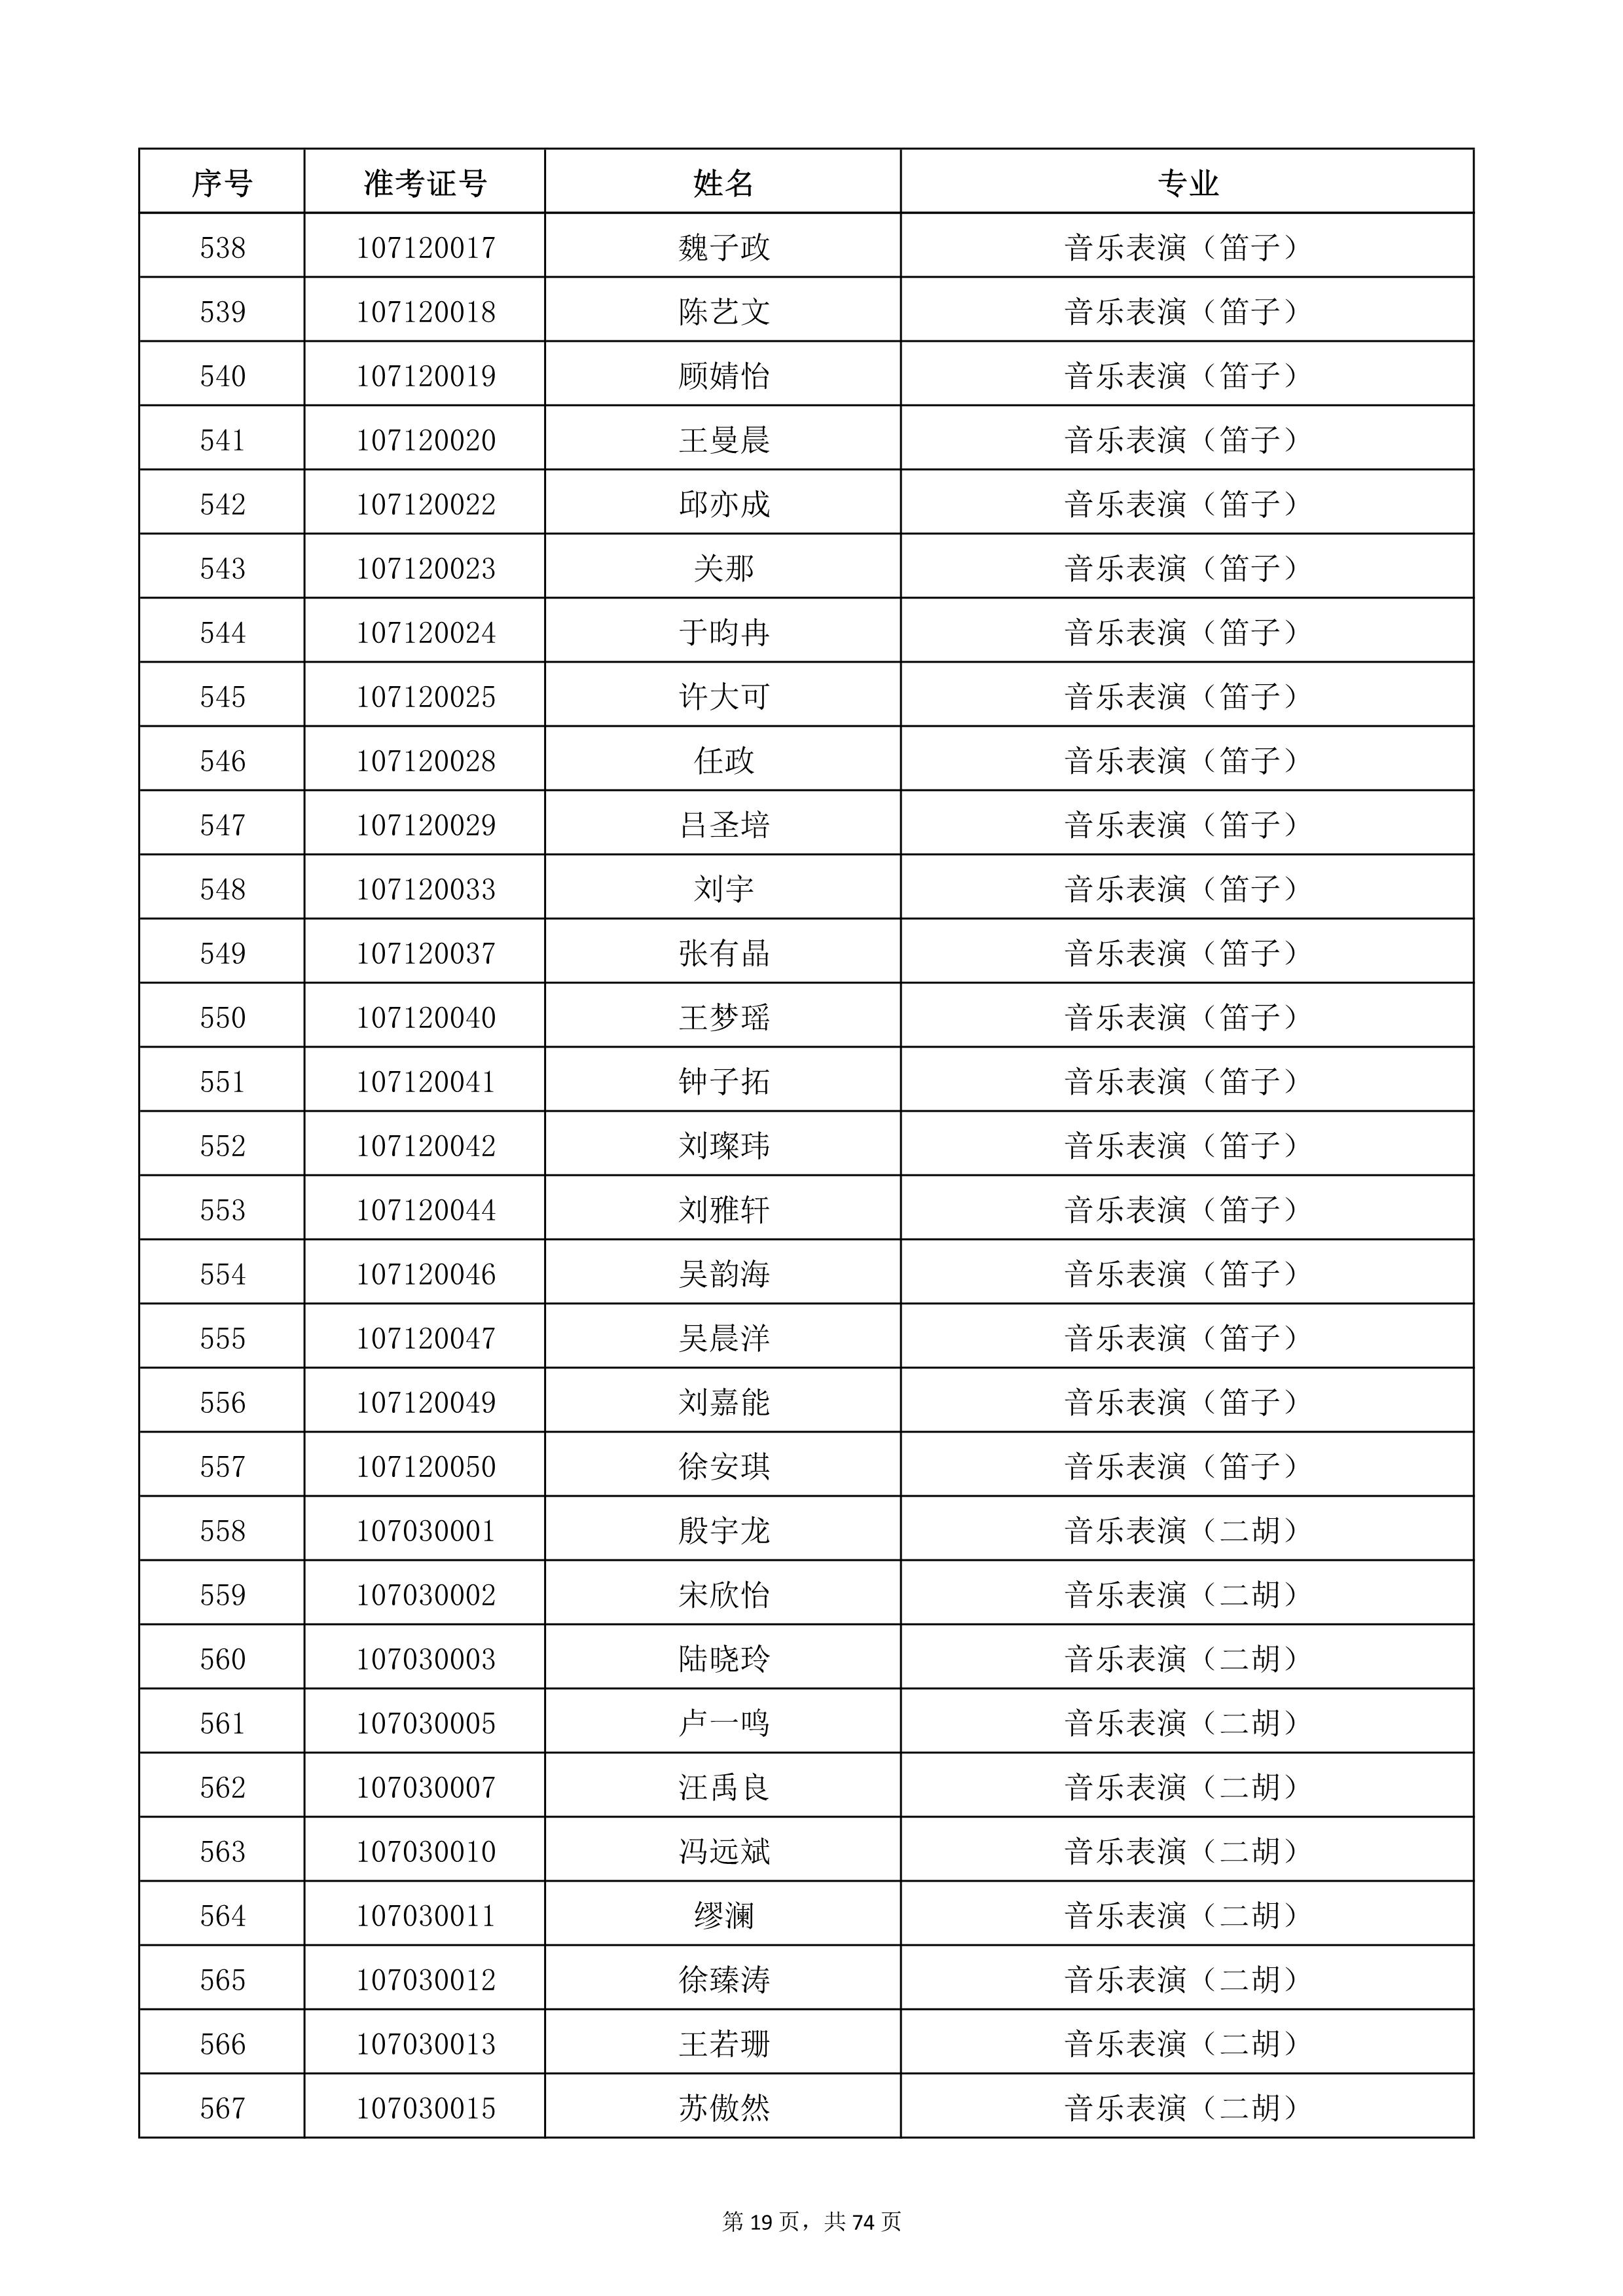 天津音乐学院2022年本科招生考试复试名单_19.jpg